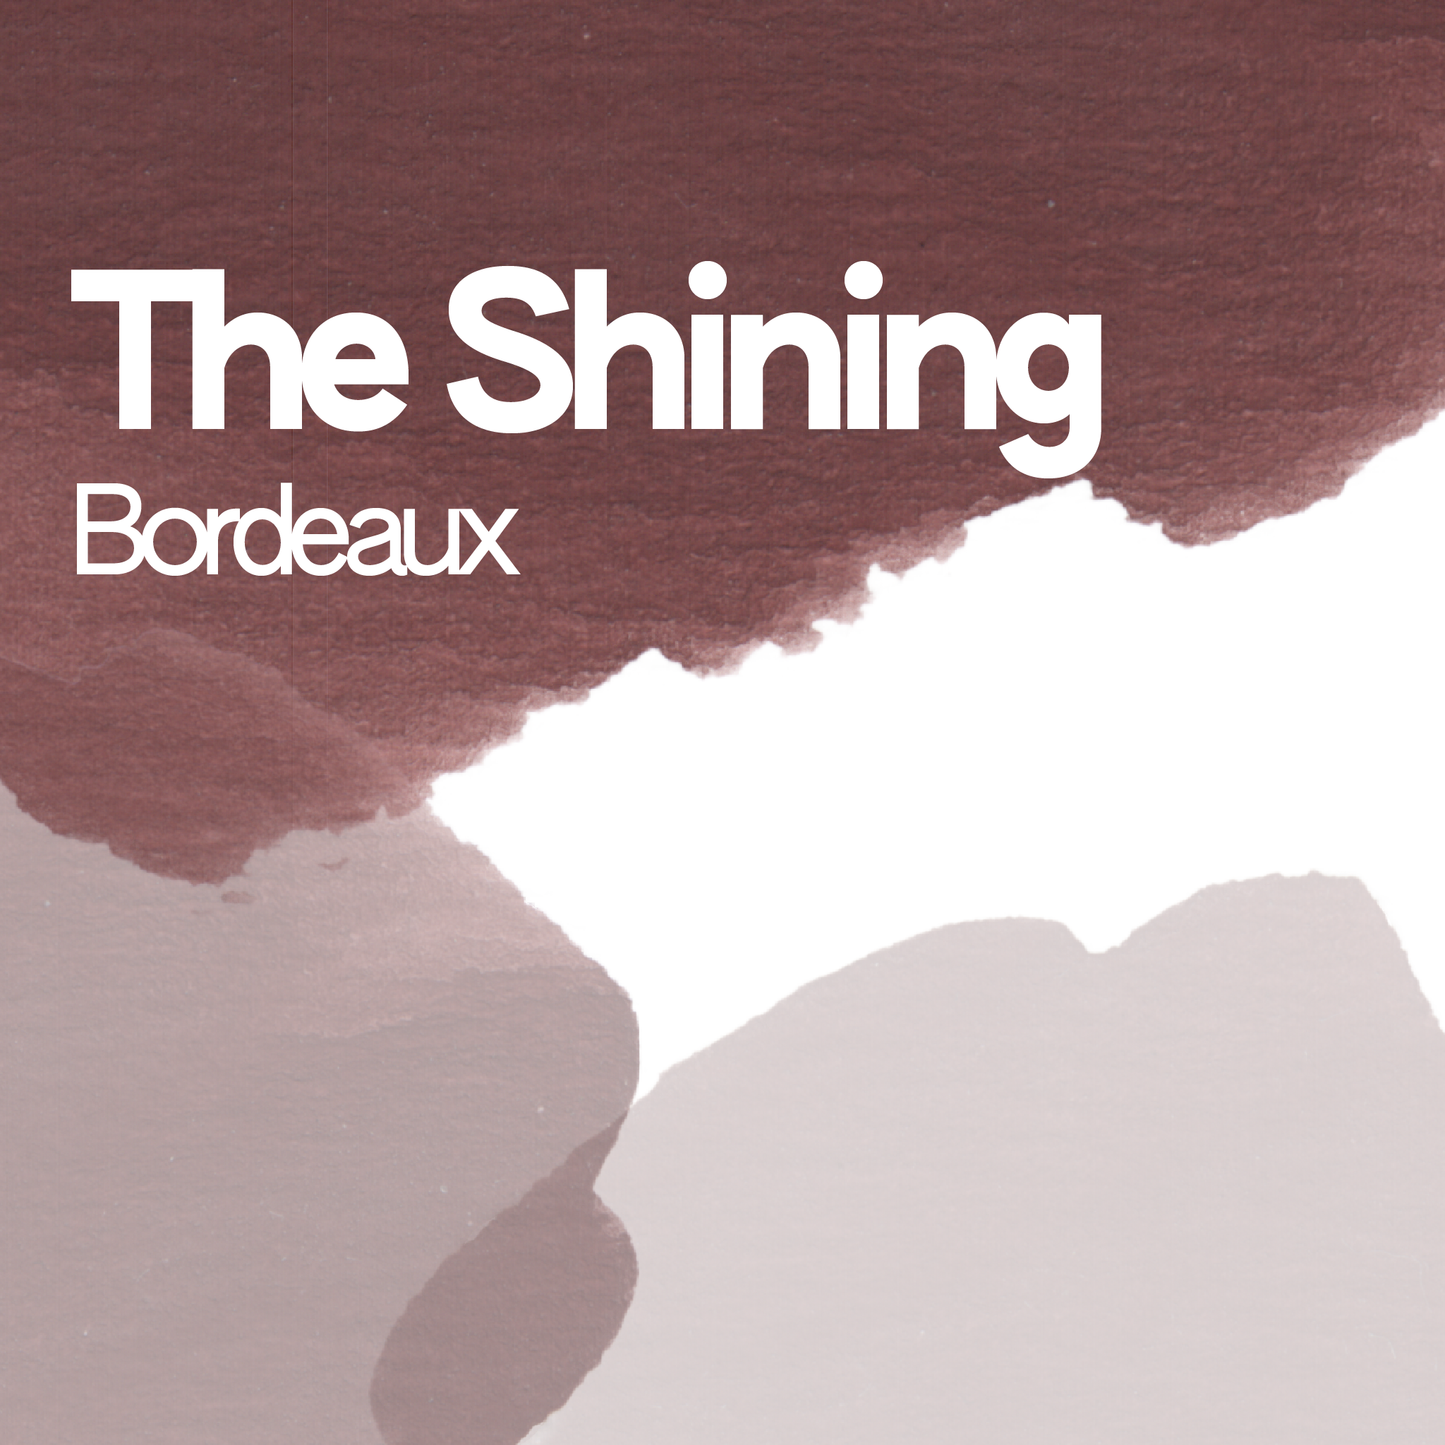 The Shining Bordeaux aquarelle artisanale vegan 